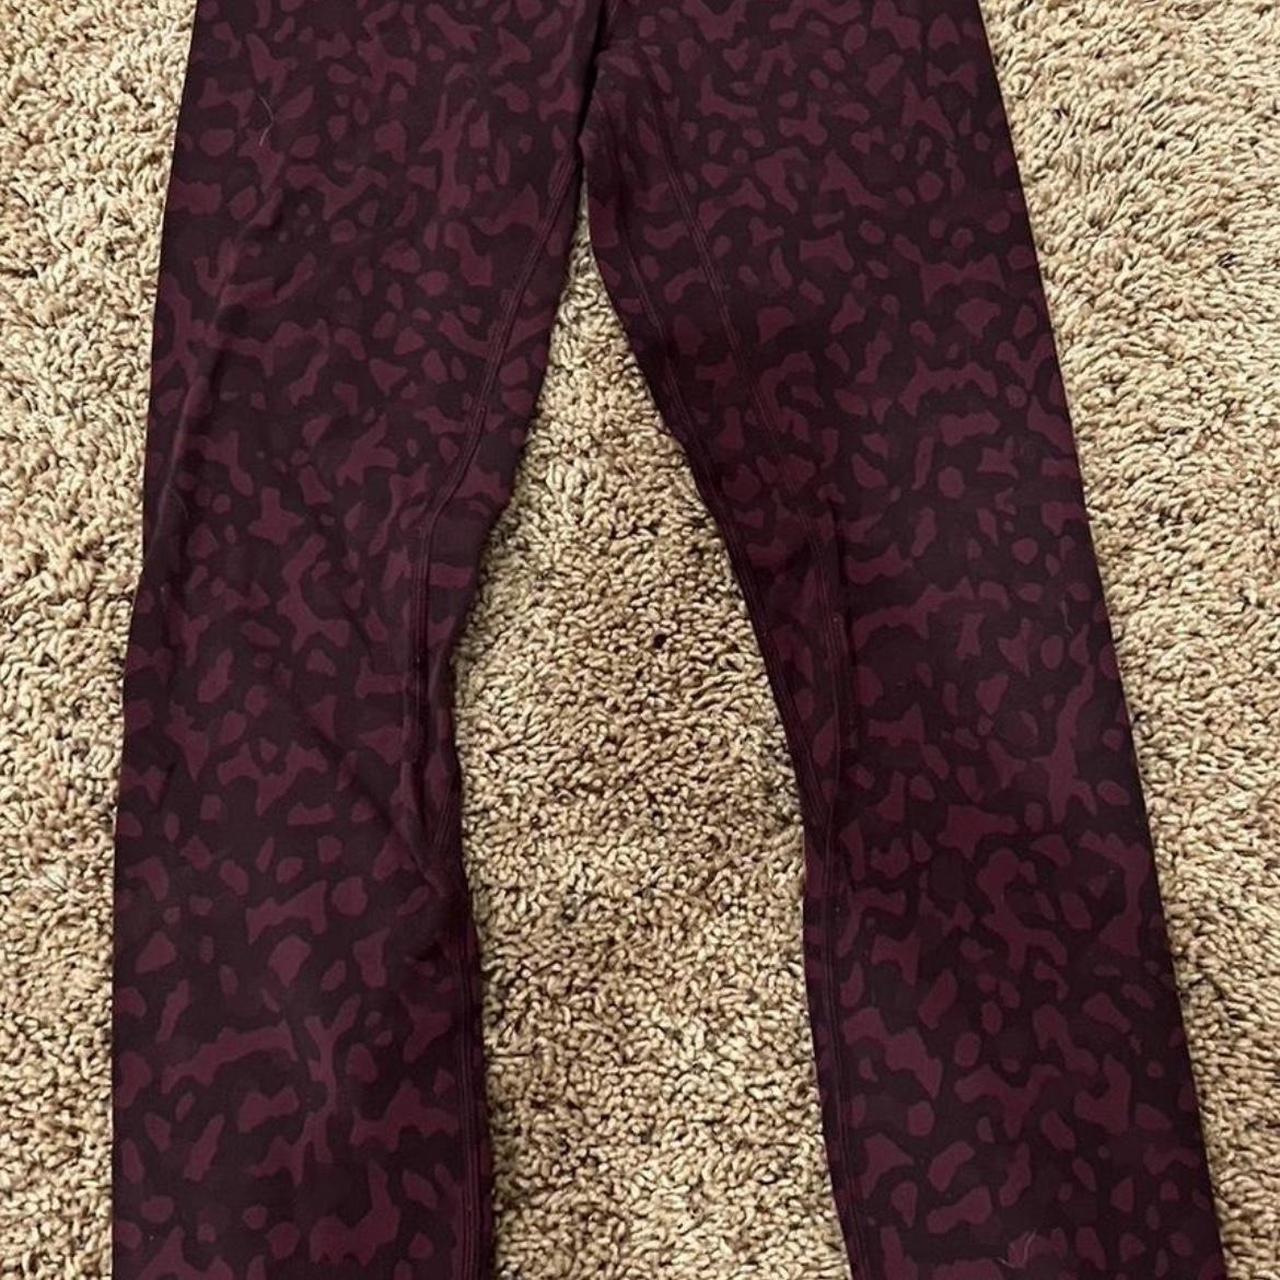 Lululemon cheetah print leggings Inseam I think is - Depop